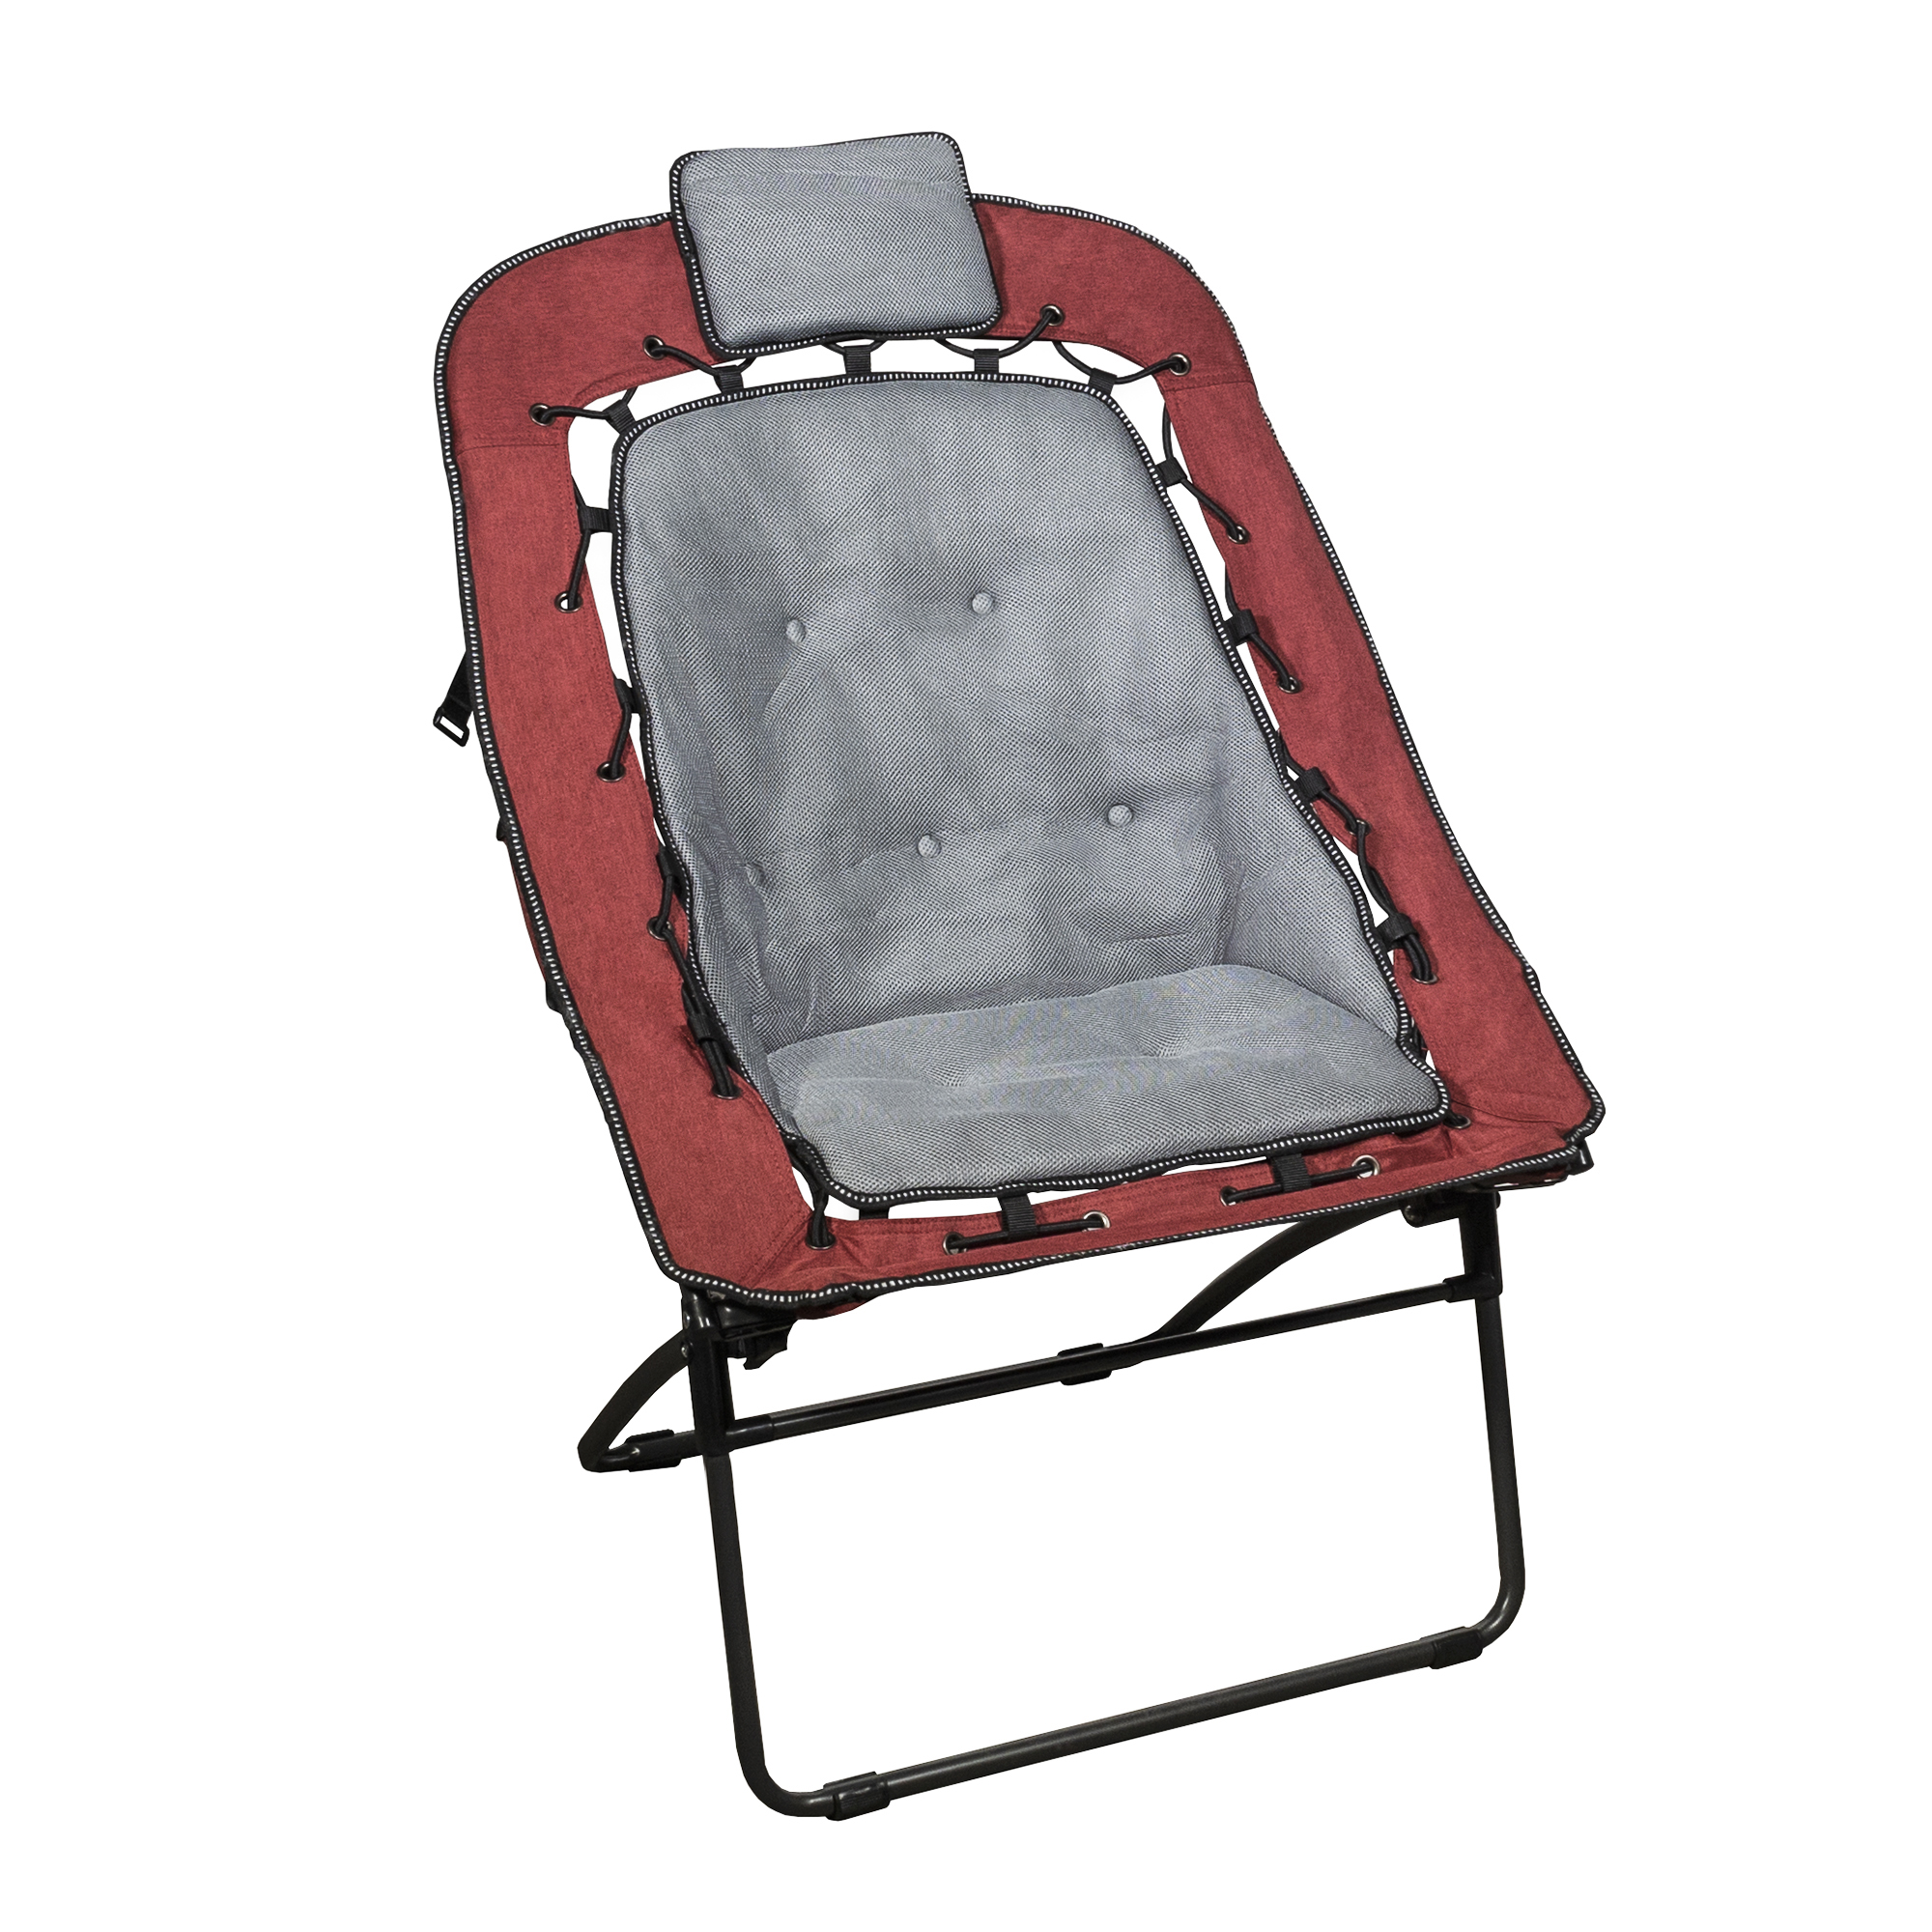 Zenithen Foldable Rectangular Air Mesh Outdoor Bungee Chair